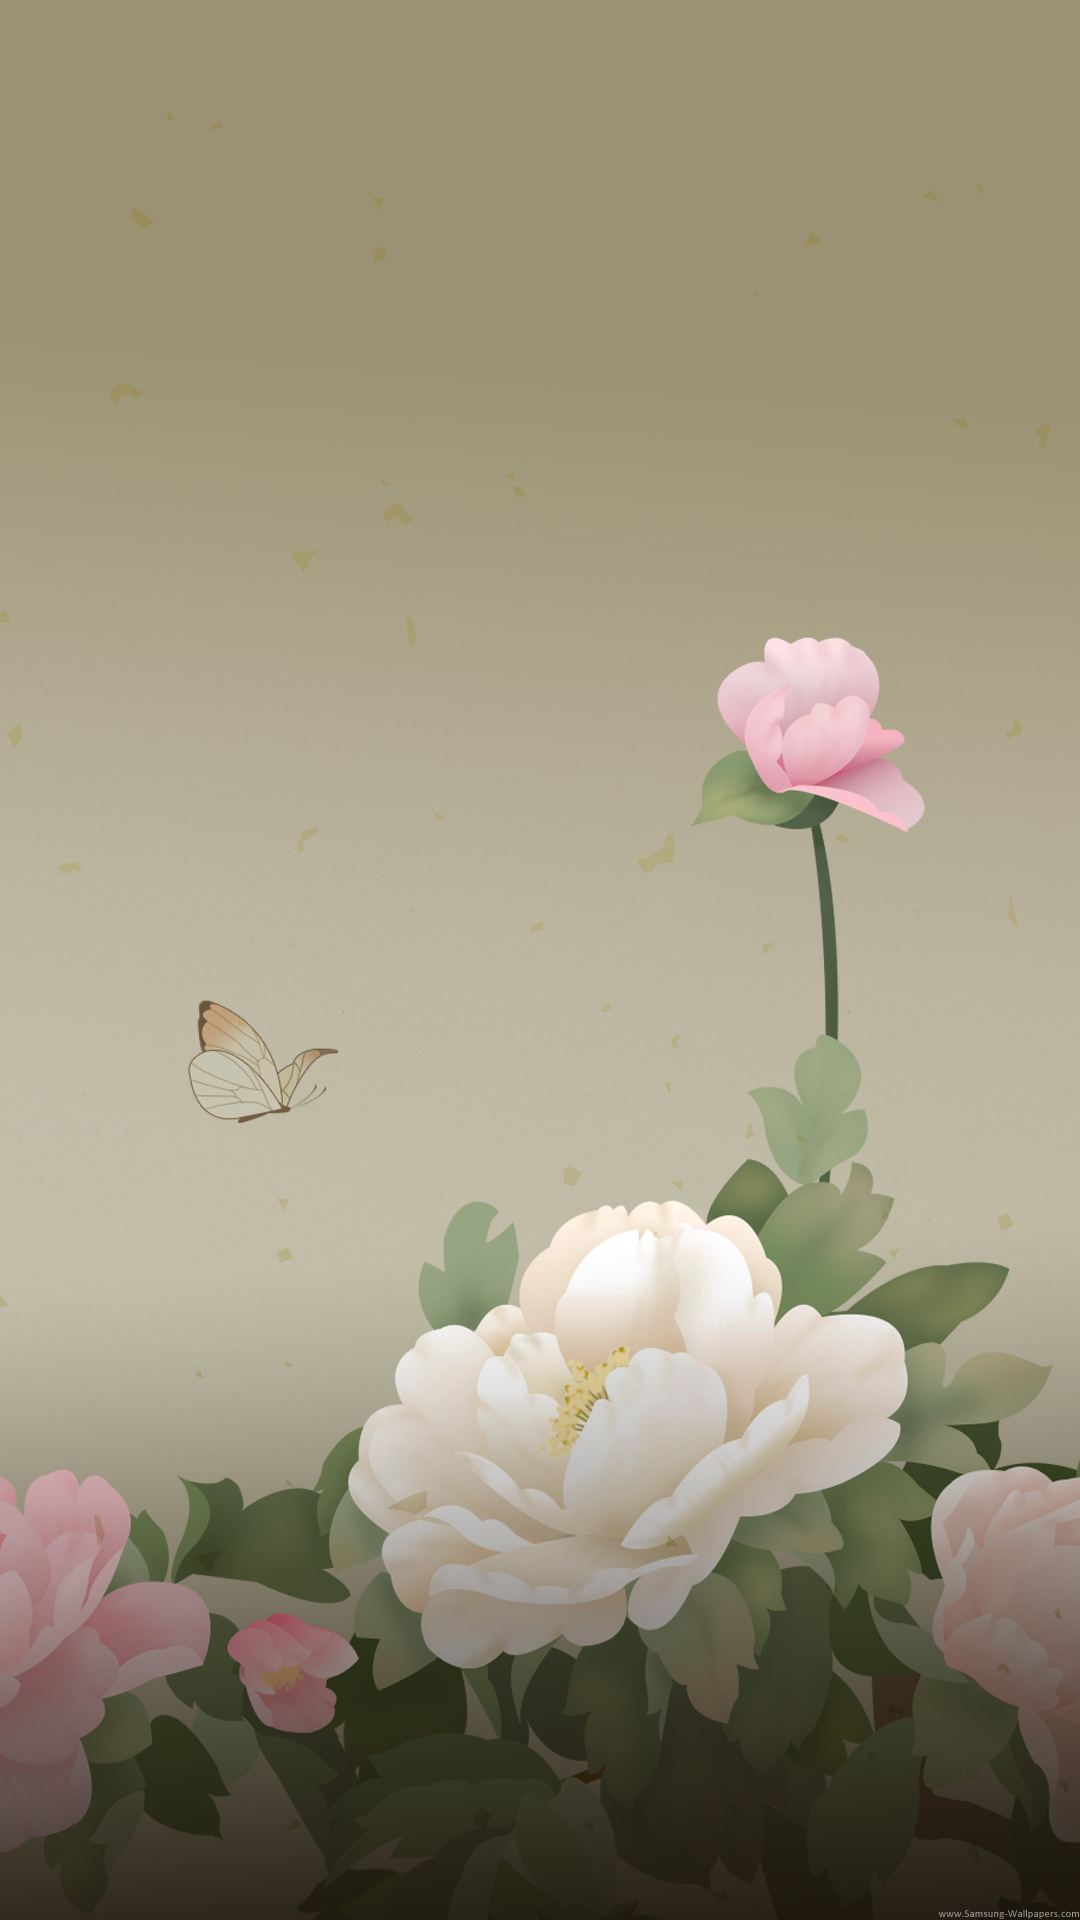 アンティークな花と蝶の絵 Iphone Wallpapers